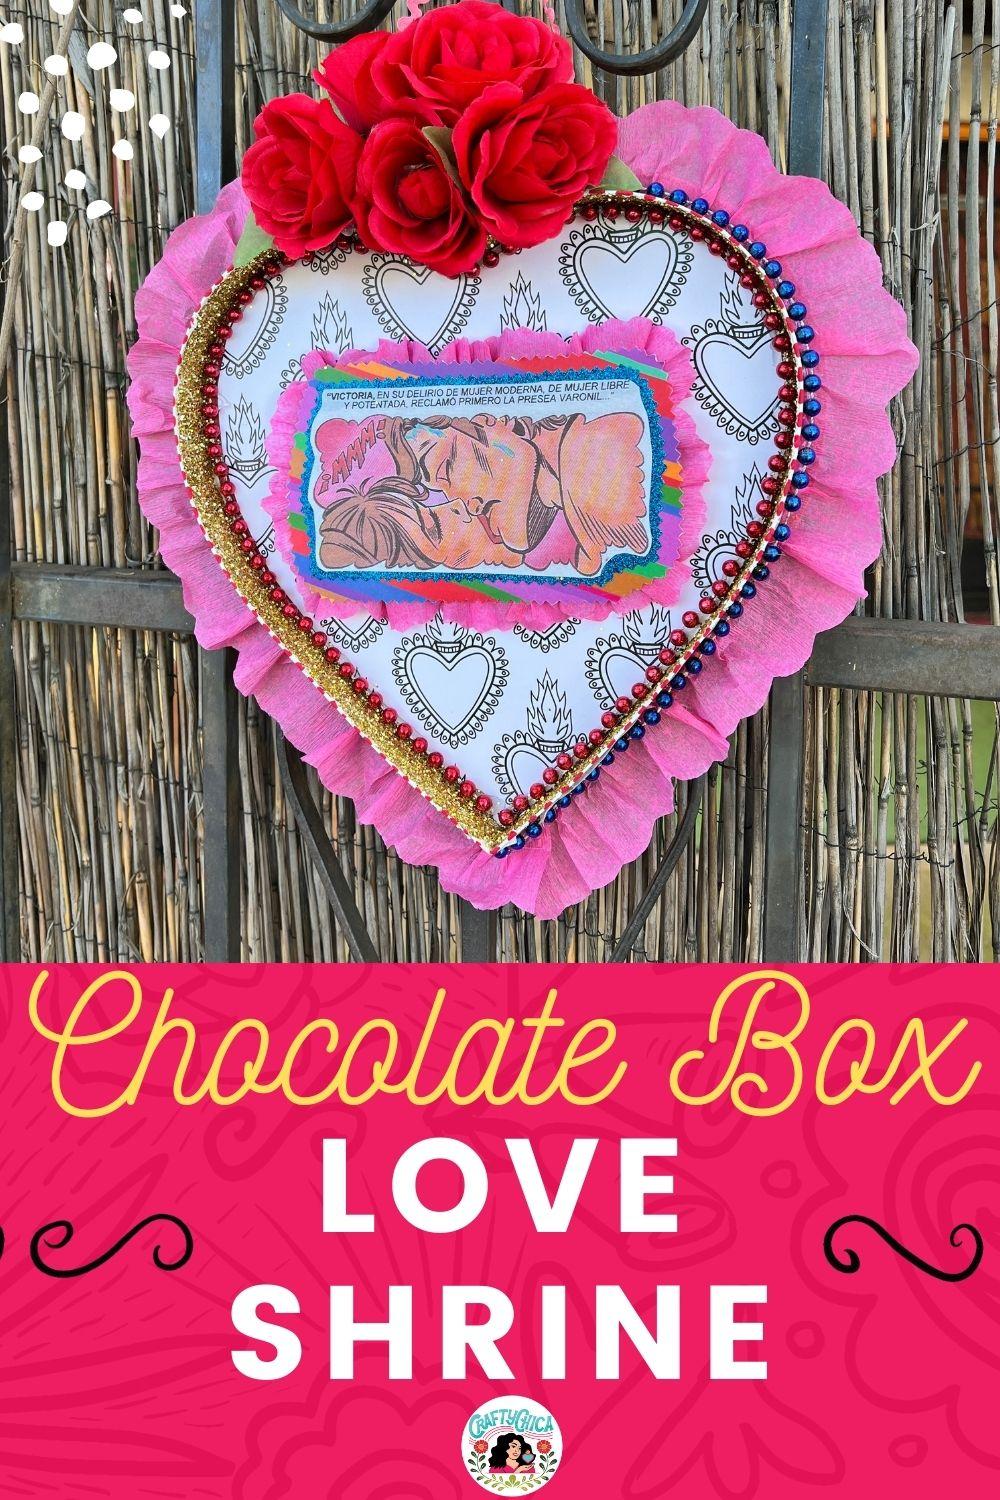 Chocolate Box Love Shrine